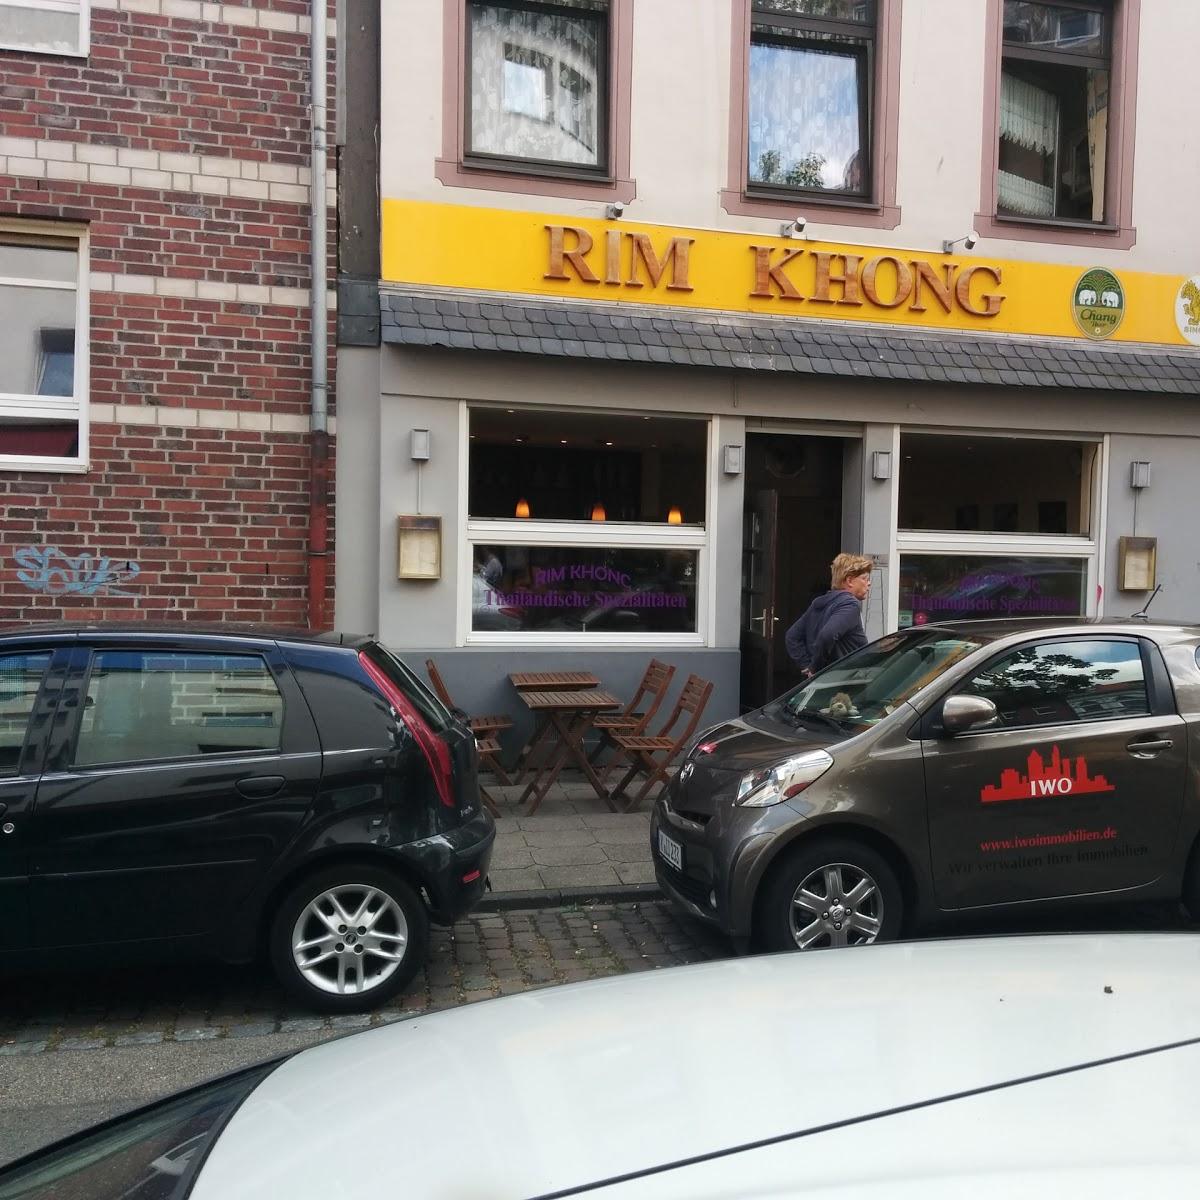 Restaurant "Rim Khong Thailändische Spezialitäten" in Köln